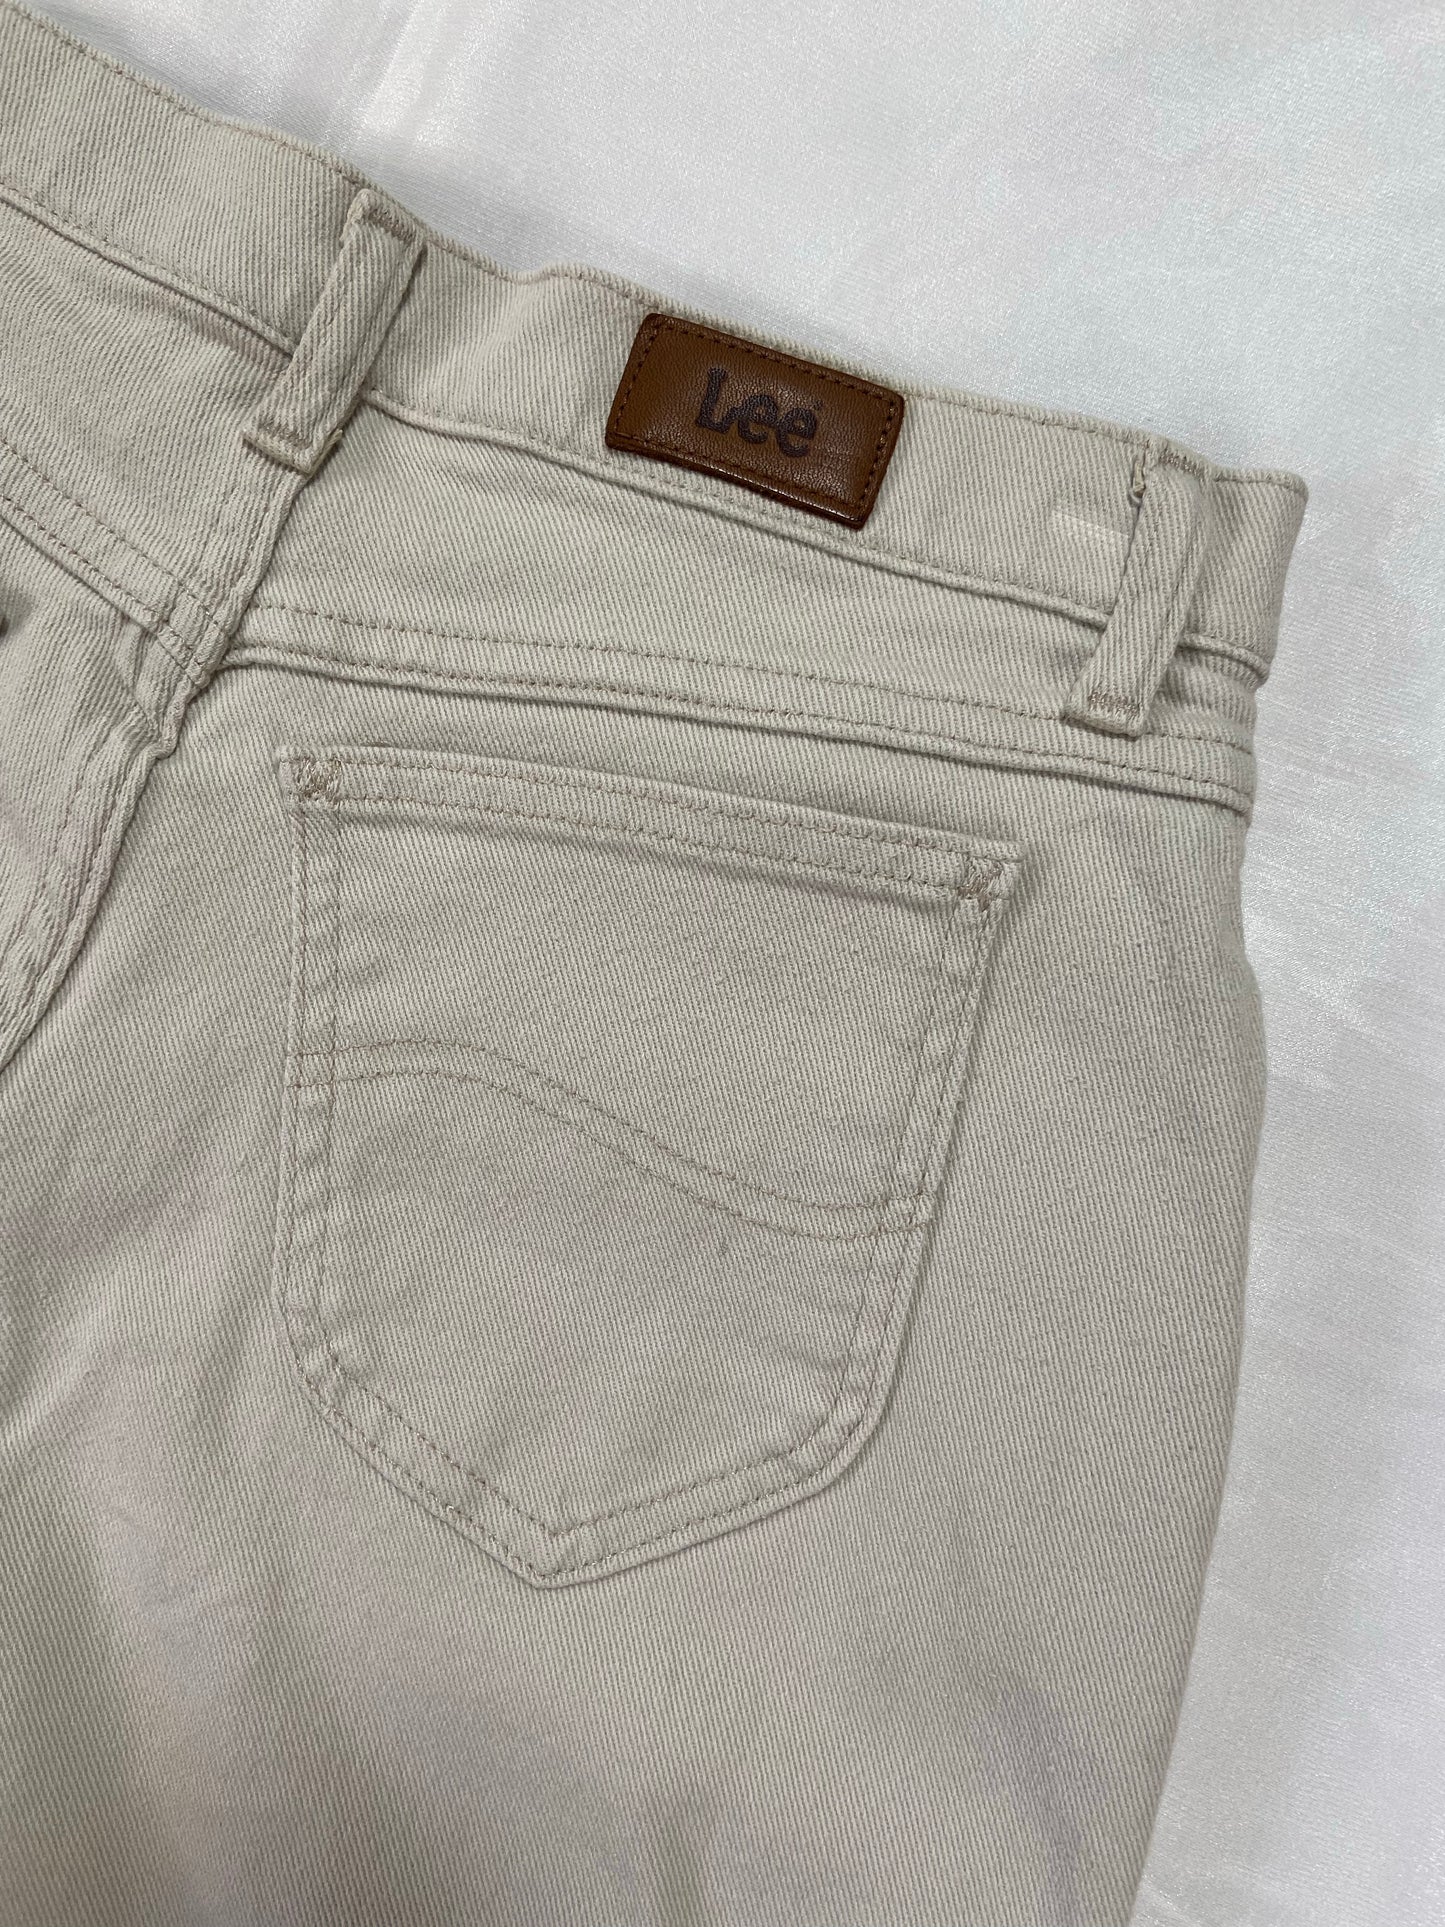 Khaki Lee Denim Shorts - 28”